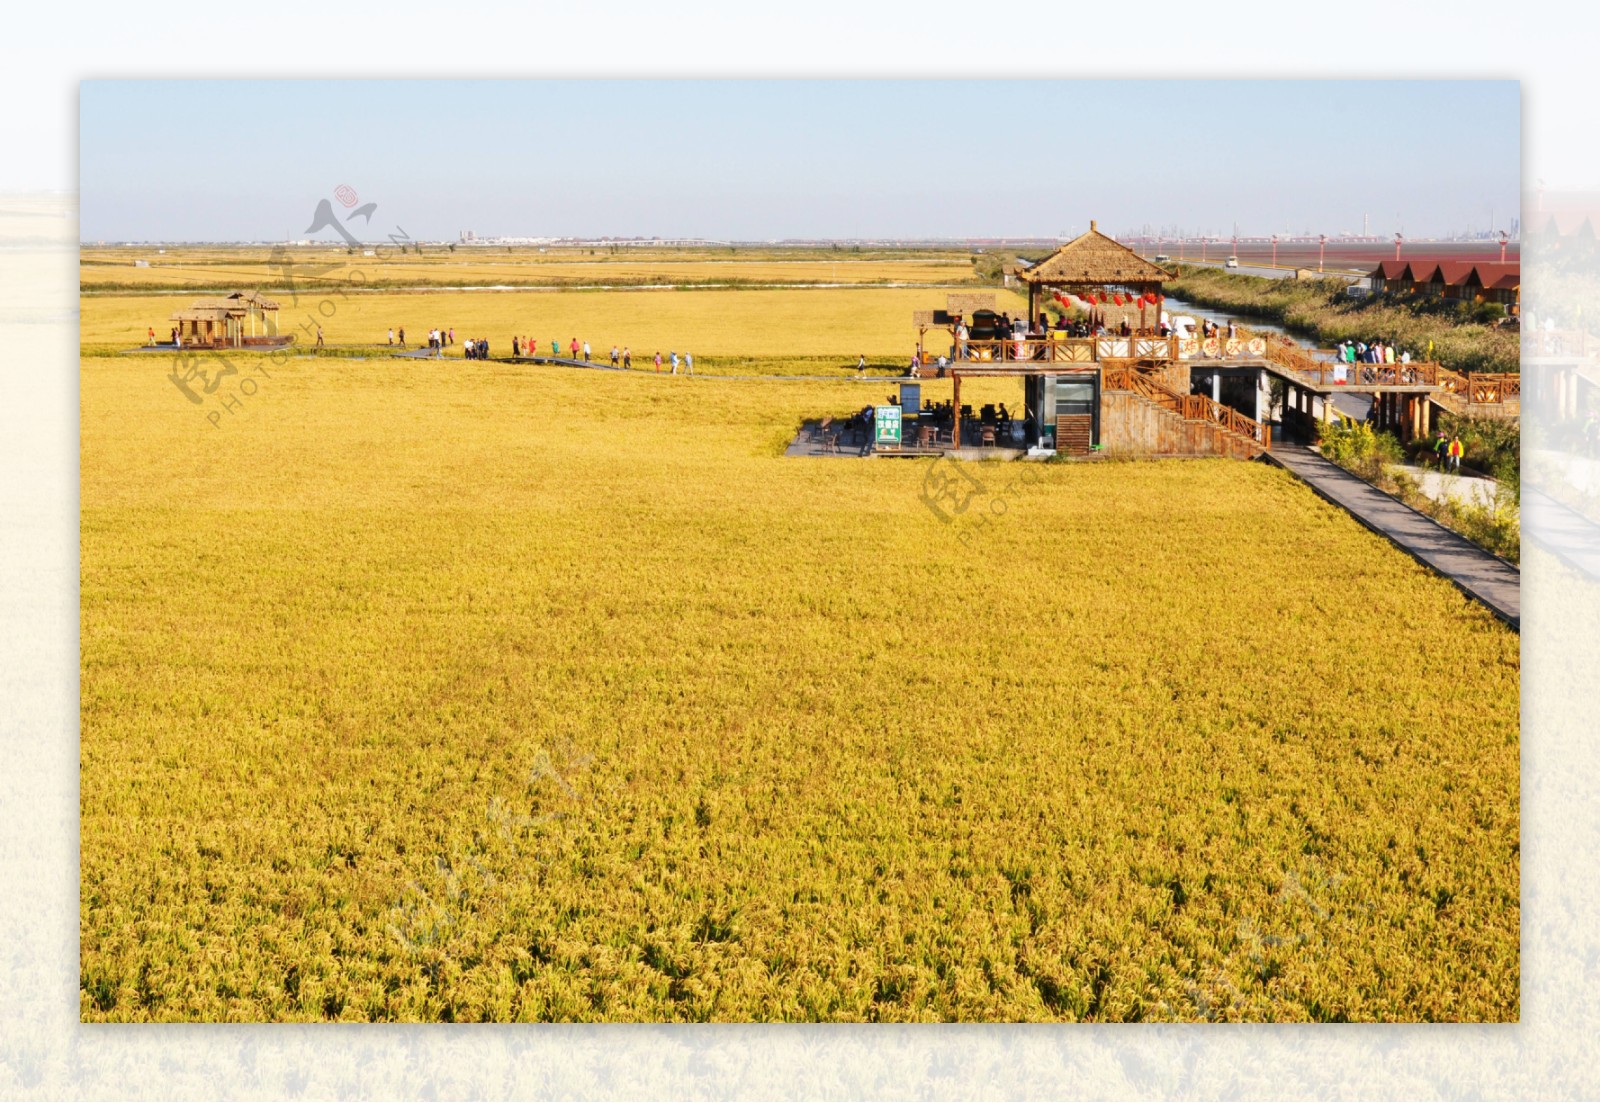 景区金黄色的稻田图片